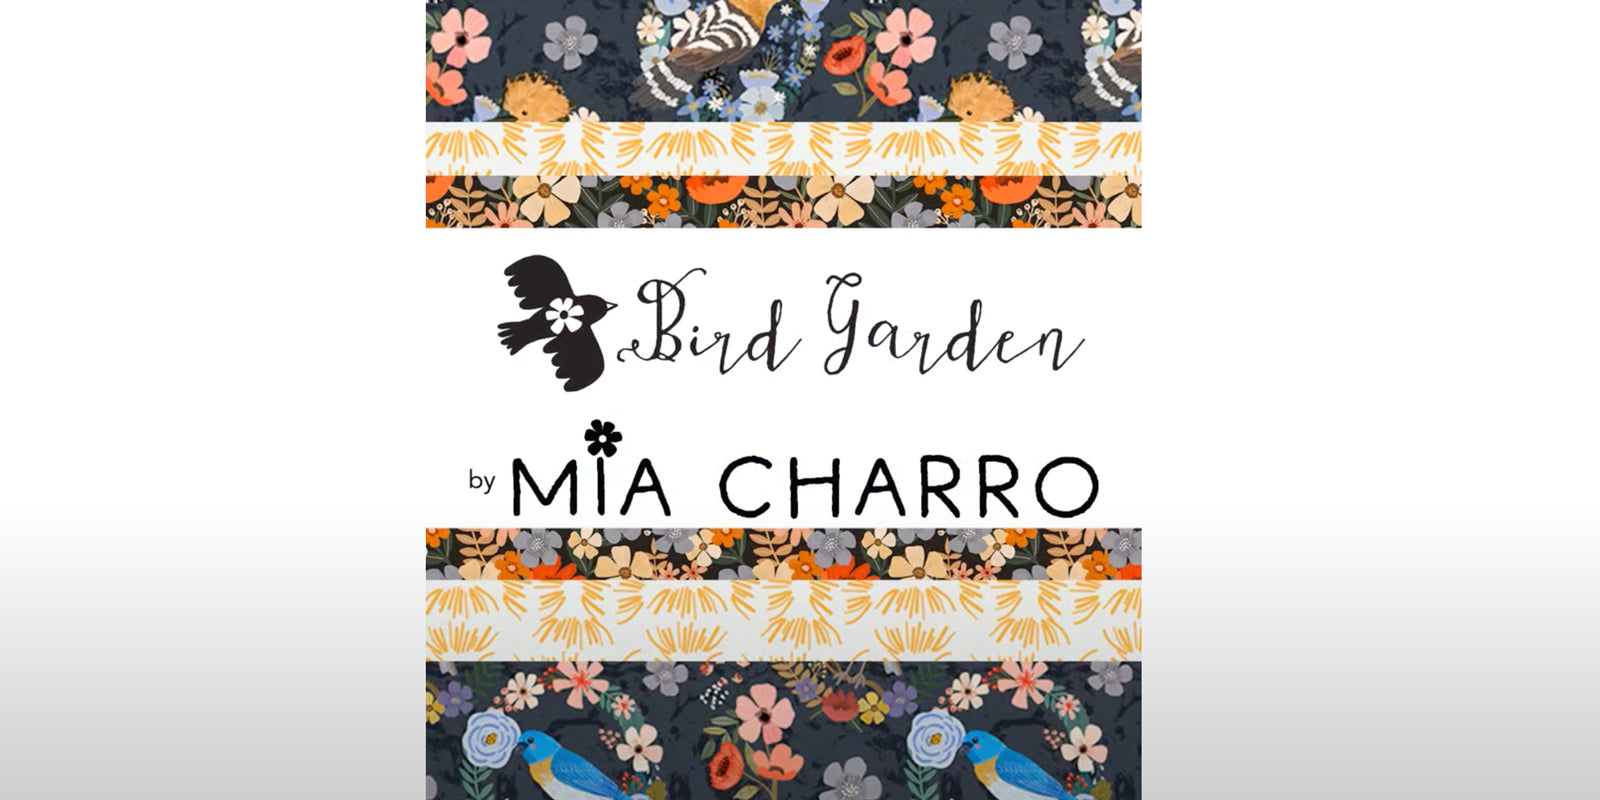 Mia Charro introduces Bird Garden